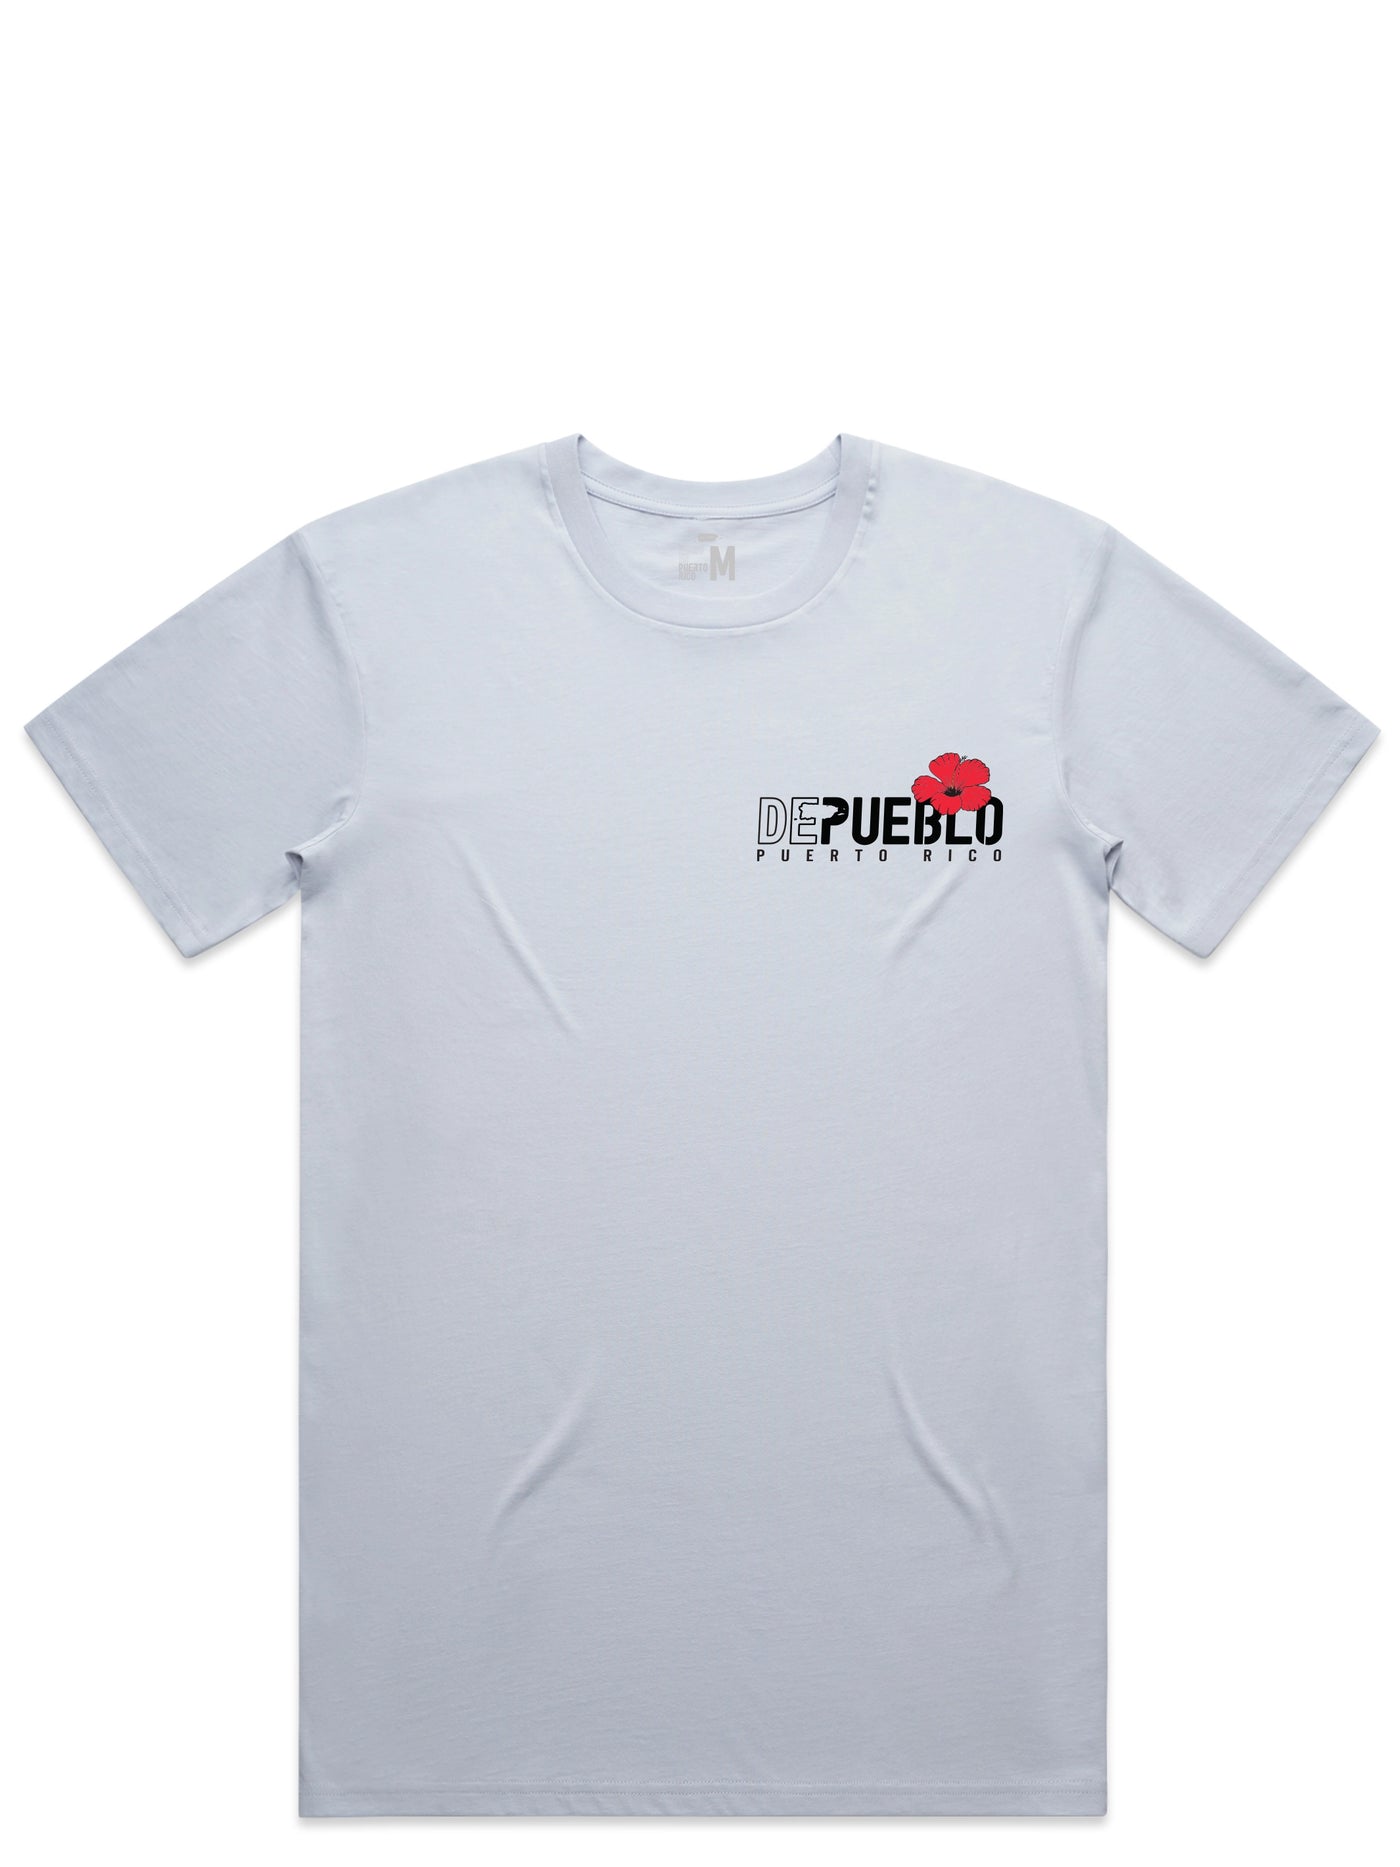 Amapola - T-Shirt